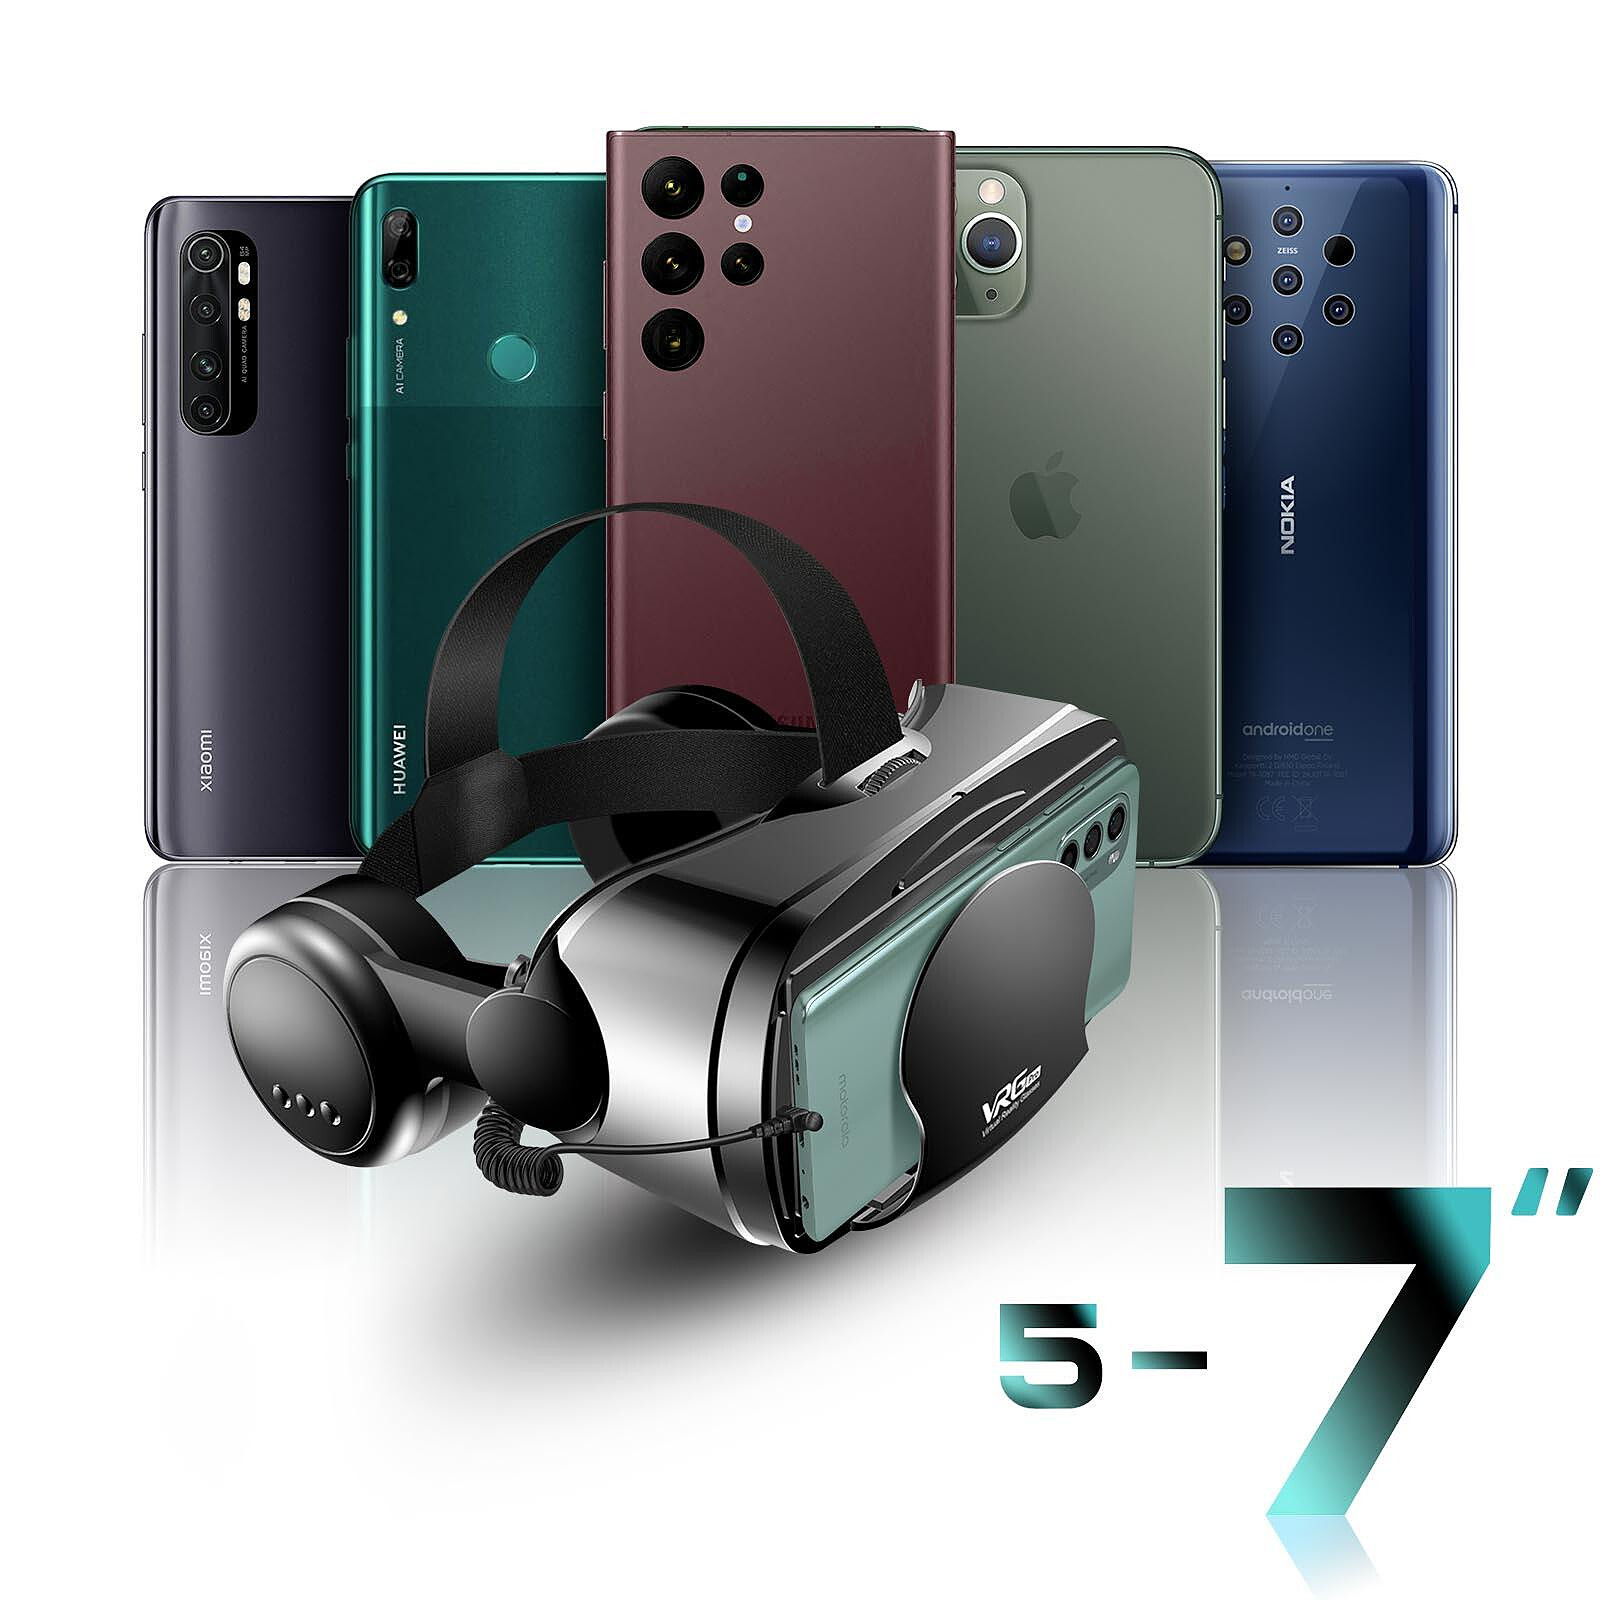 VR Shinecon Masque de réalité 3D noir - Accessoires divers